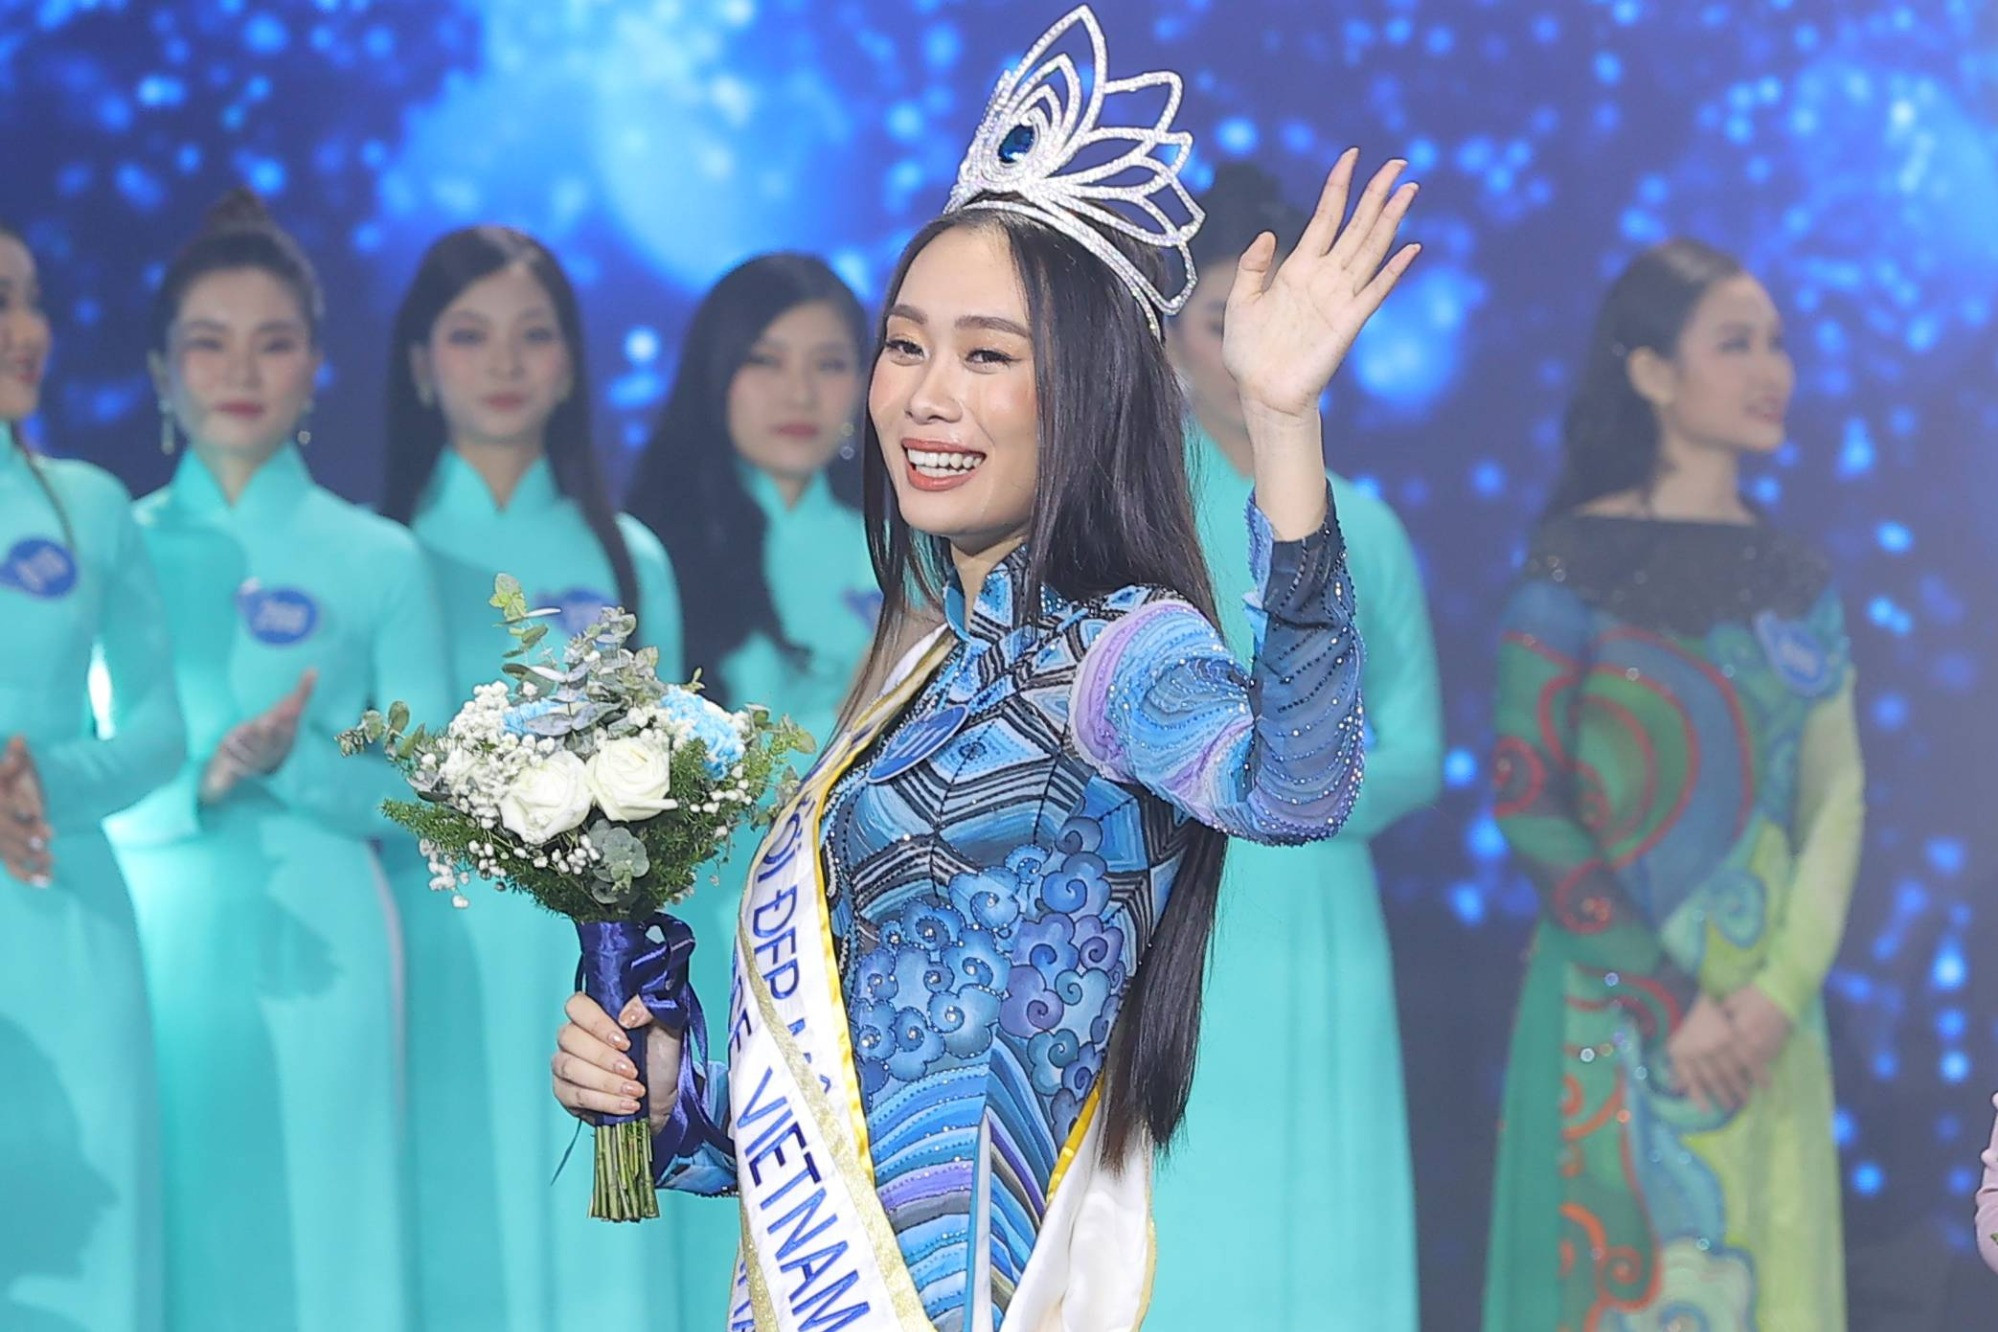 Tranh chấp tên ‘Hoa hậu Hoà bình Việt Nam’: Minh Khang dọa kiện Sen Vàng